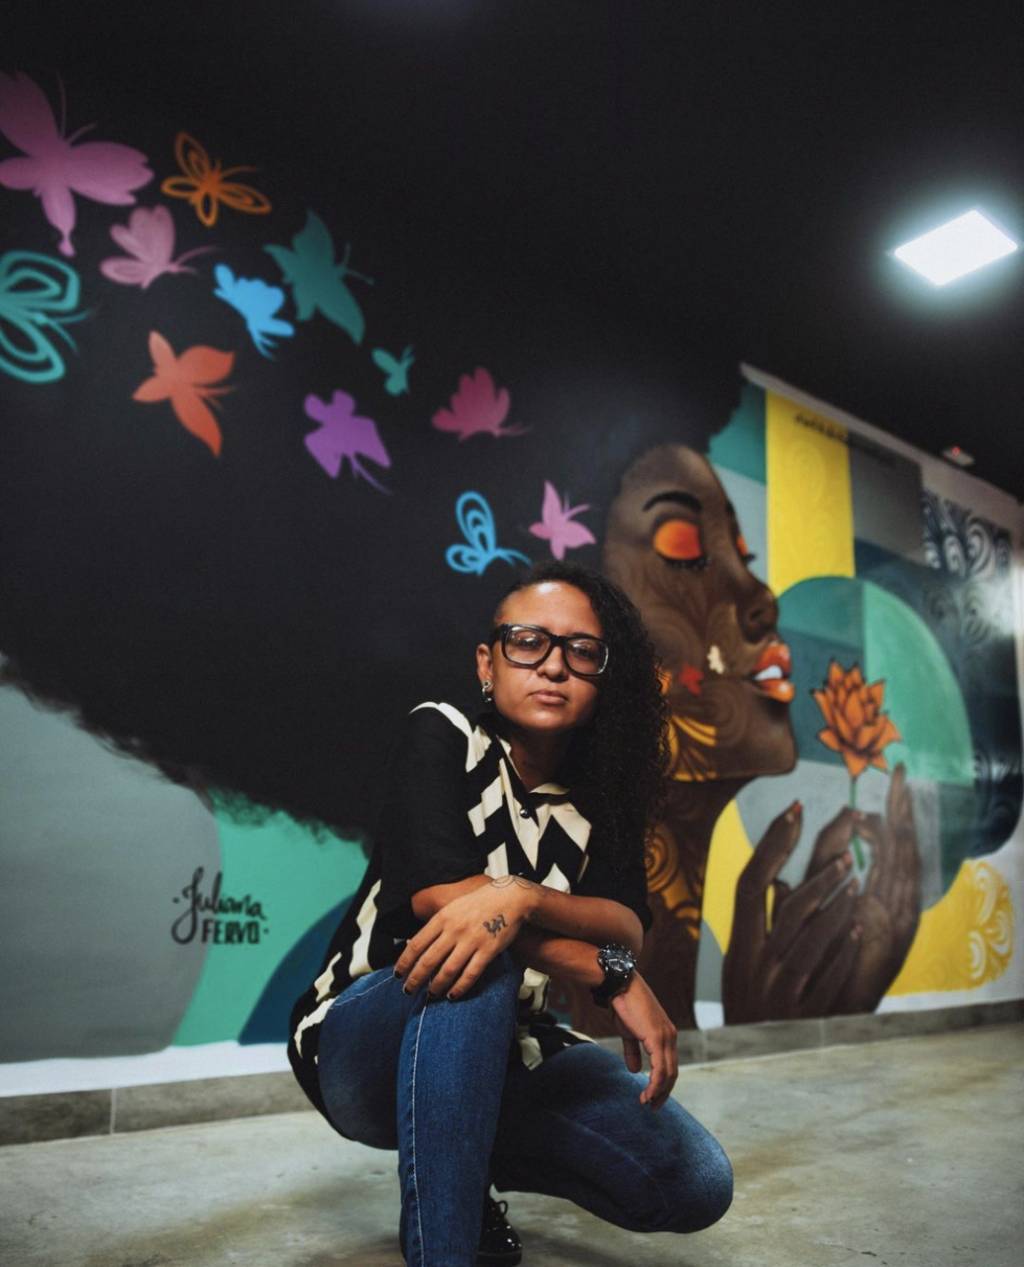 Mulher posa em frente a mural grafitado